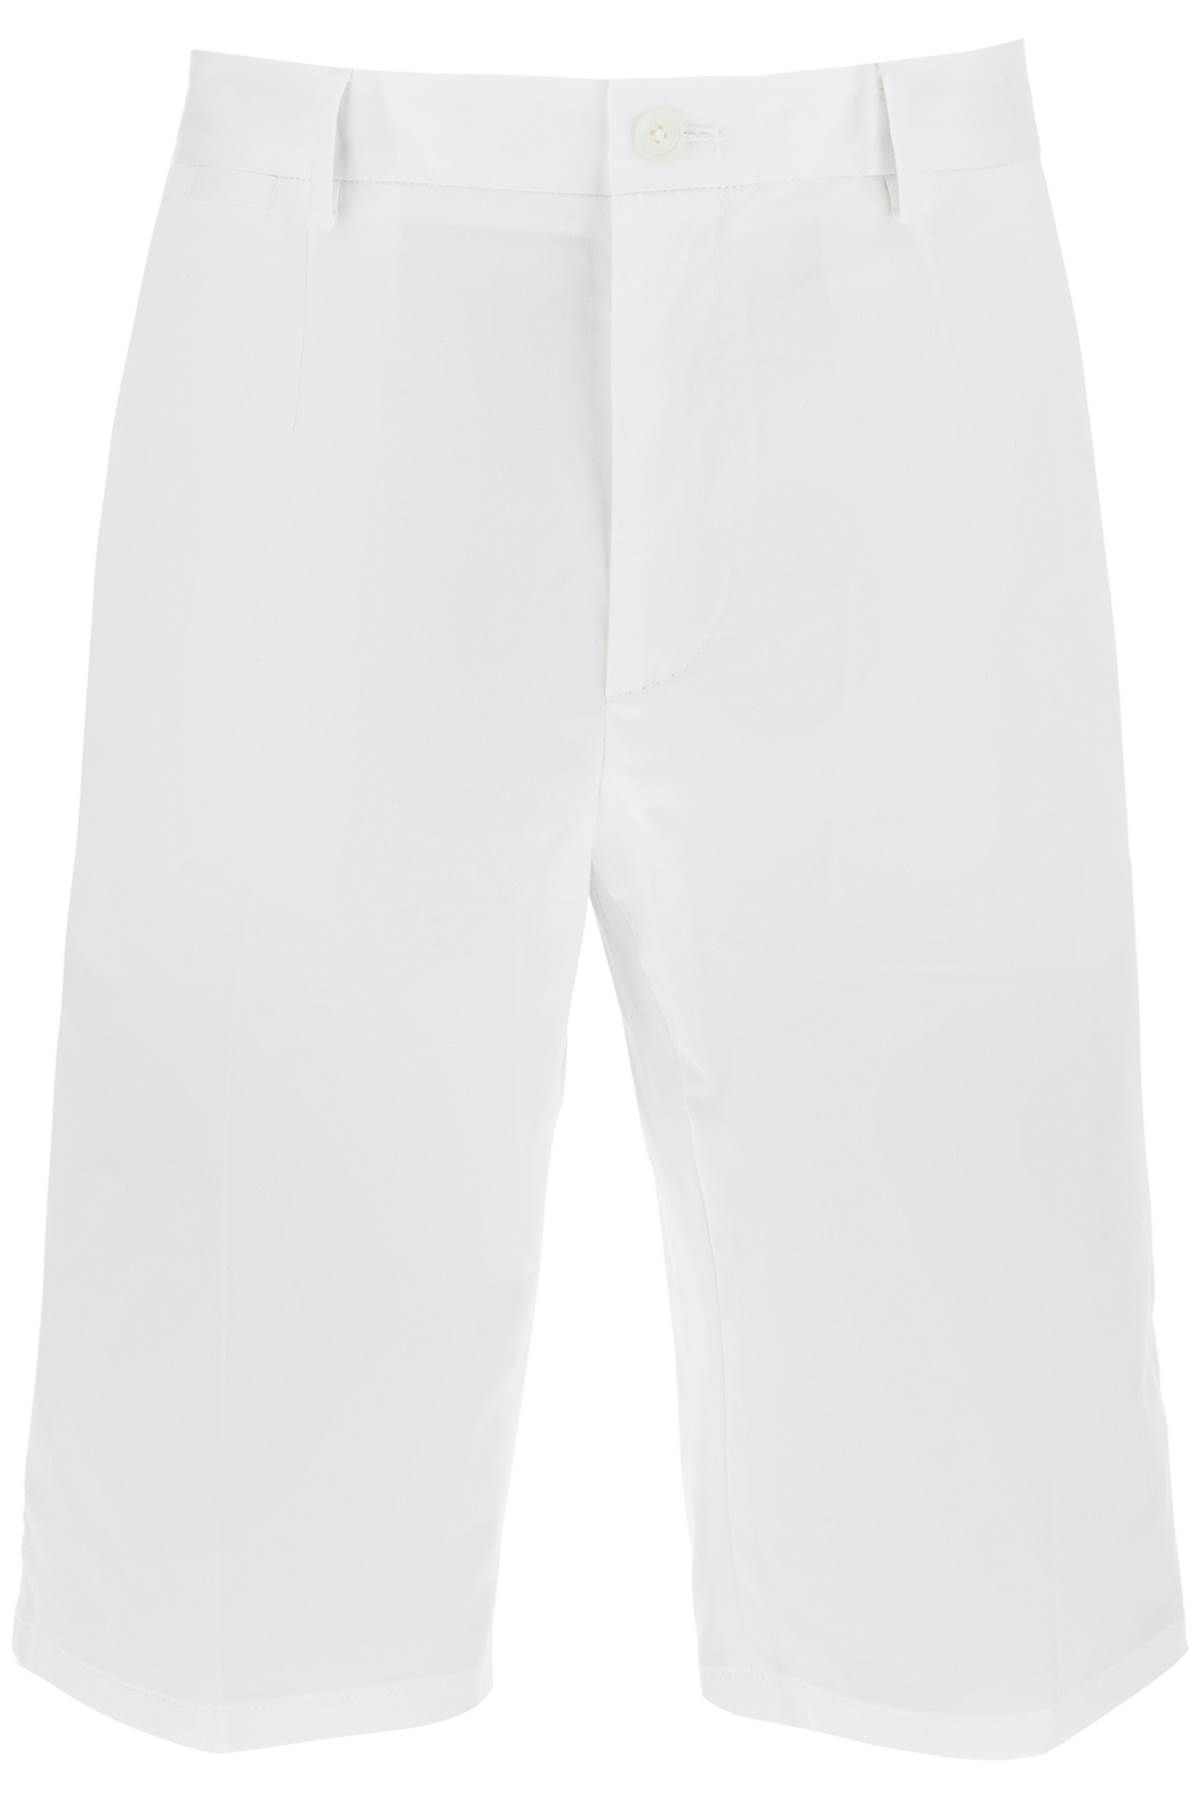 Dolce & Gabbana DOLCE & GABBANA stretch cotton bermuda shorts